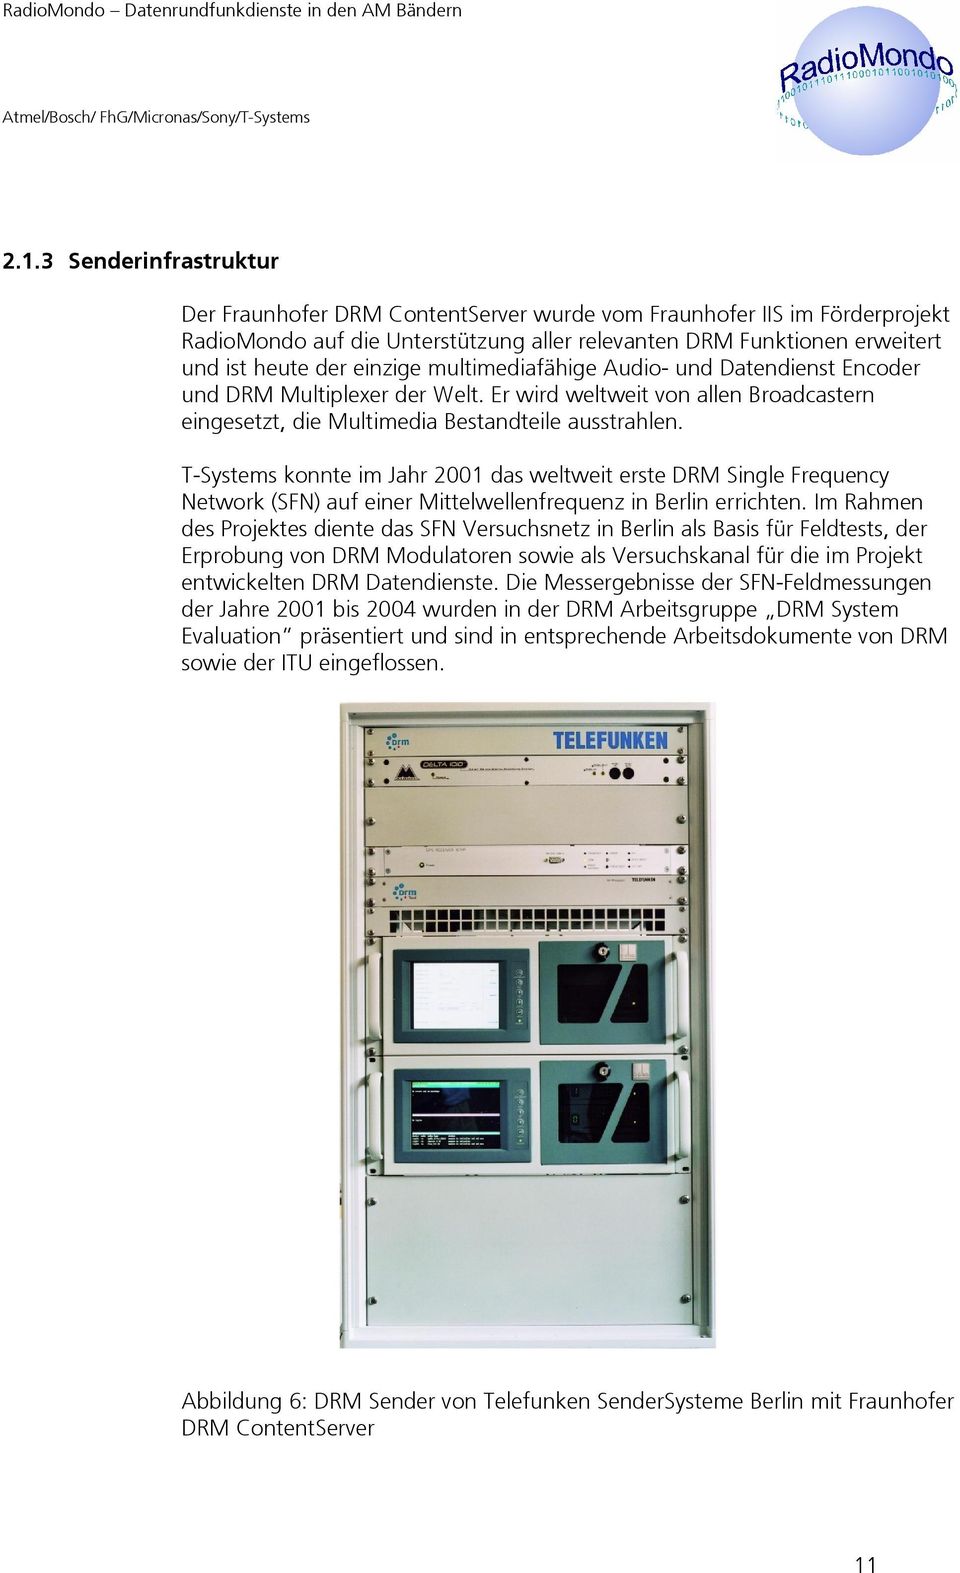 T-Systems konnte im Jahr 2001 das weltweit erste DRM Single Frequency Network (SFN) auf einer Mittelwellenfrequenz in Berlin errichten.